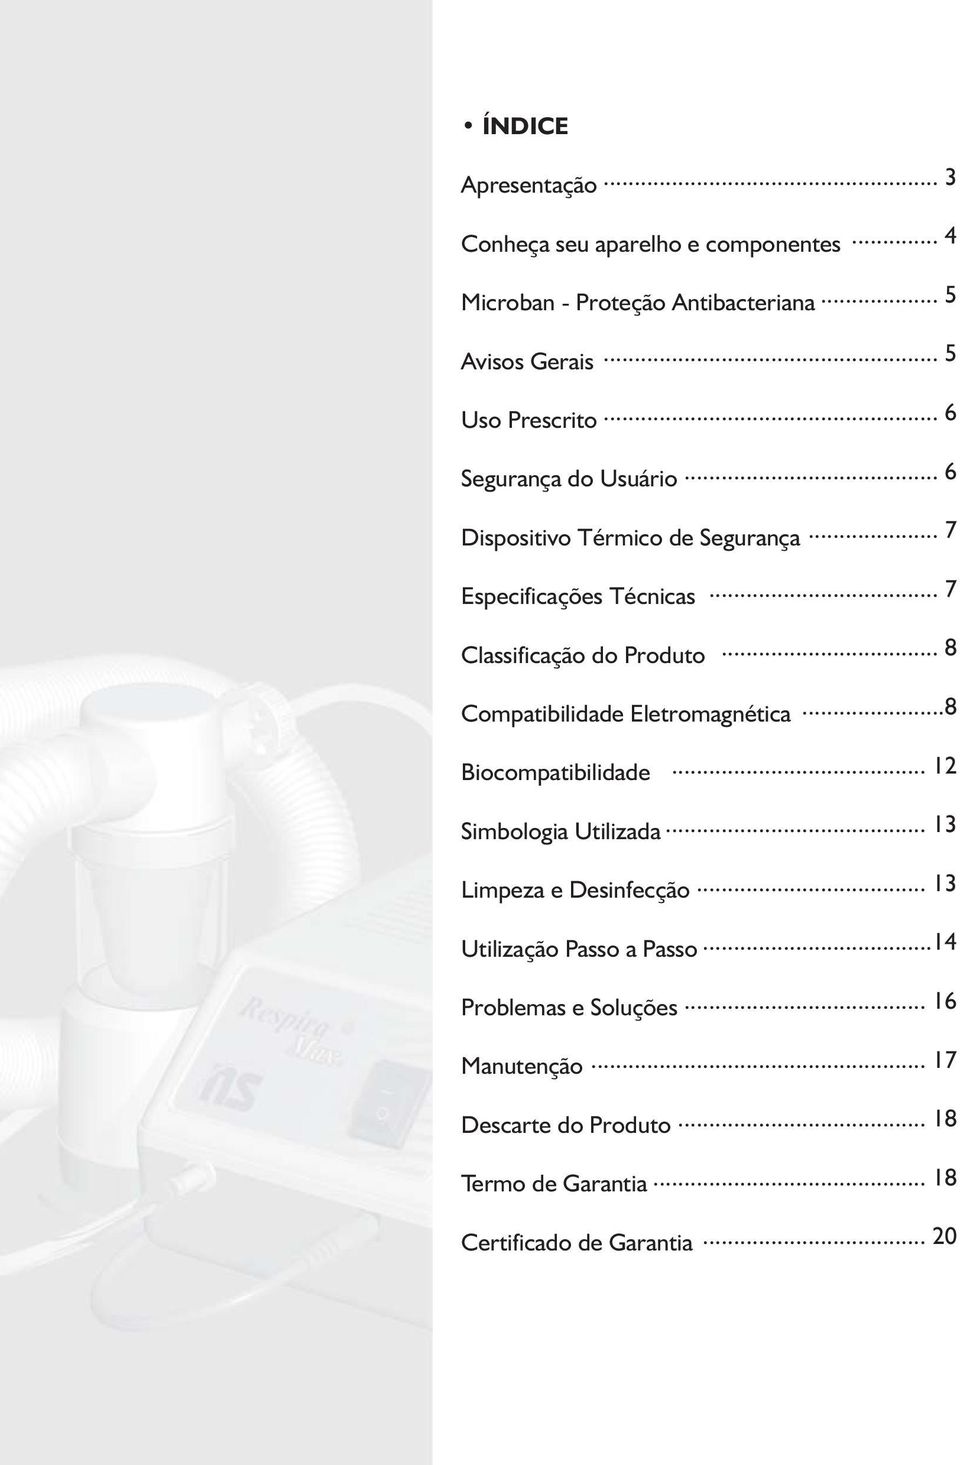 .. 7 Especificações Técnicas Classificação do Produto... 7... 8 Compatibilidade Eletromagnética...8 Biocompatibilidade.